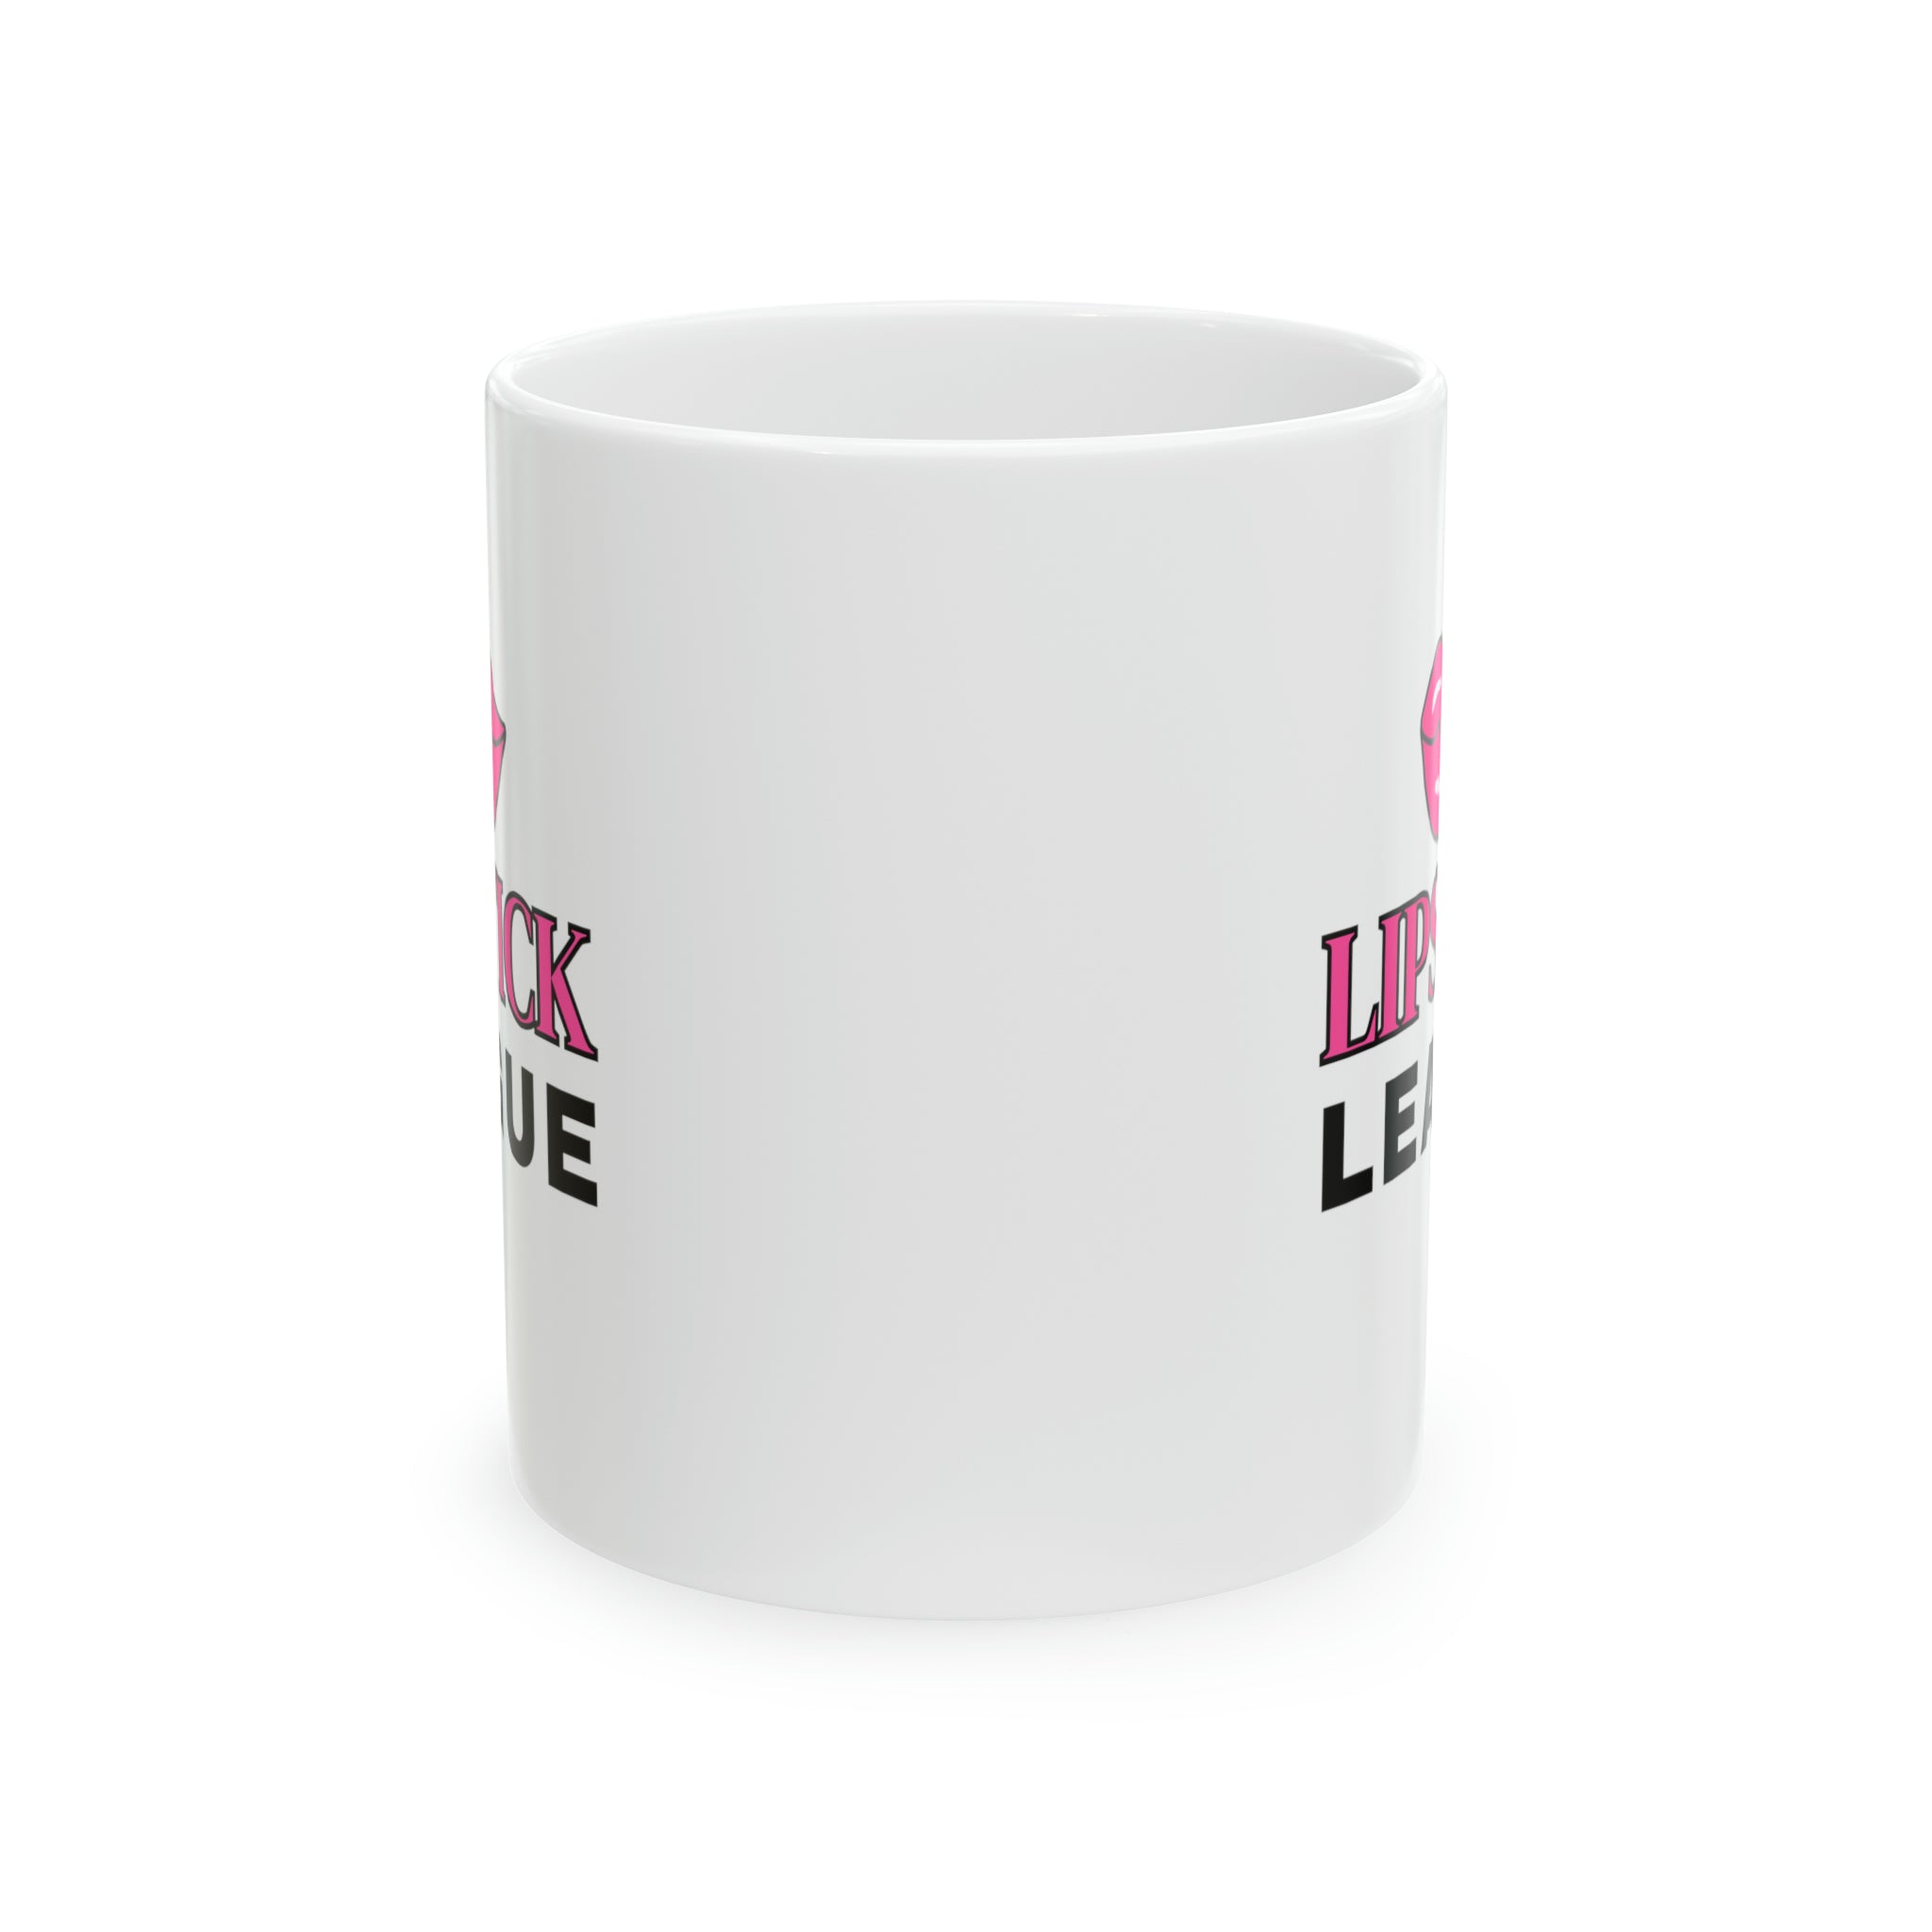 Lipstick League (Pink Lips) 11oz Coffee Mug, Makeup Themed Coffee Mug, Beauty Business Mug Mug  The Middle Aged Groove